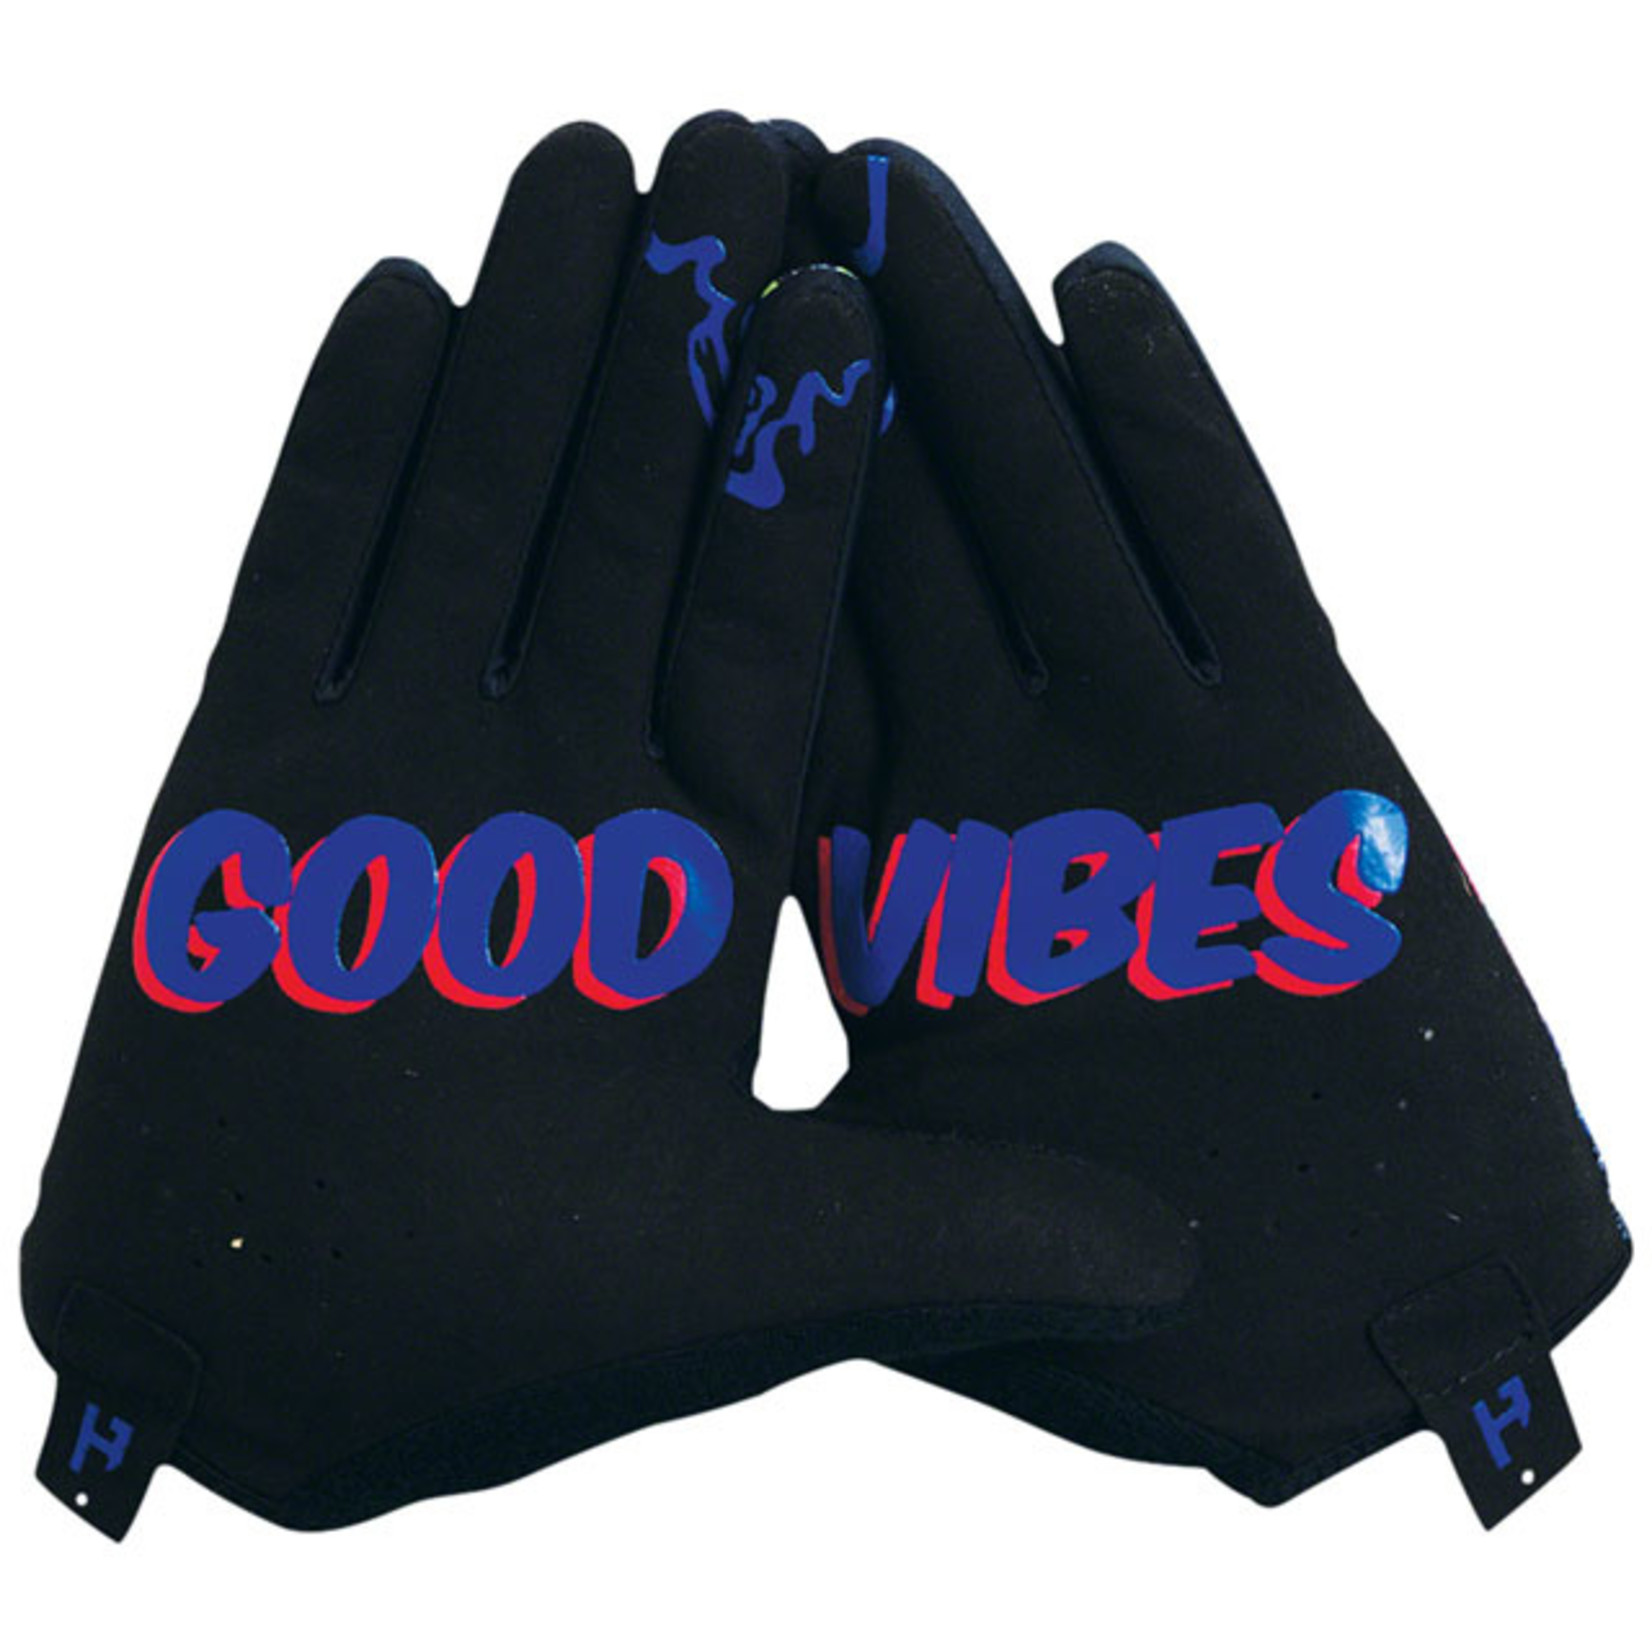 Handup HandUp Most Days Gloves - Funky Fade Full Finger Large